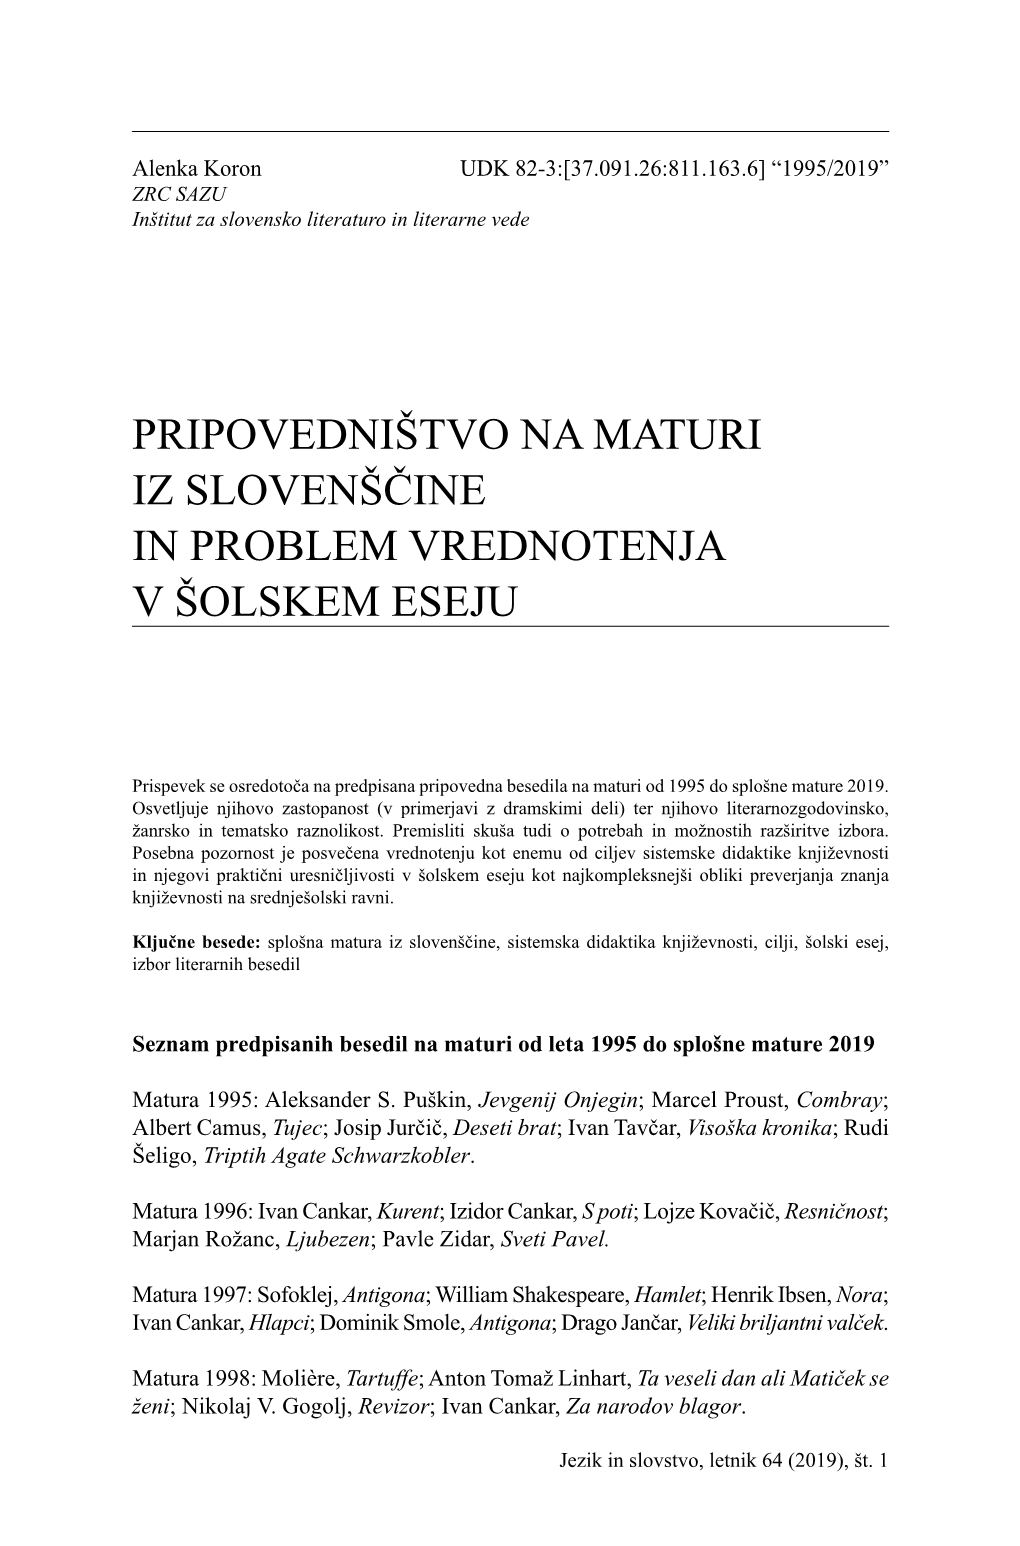 Pripovedništvo Na Maturi Iz Slovenščine in Problem Vrednotenja V Šolskem Eseju